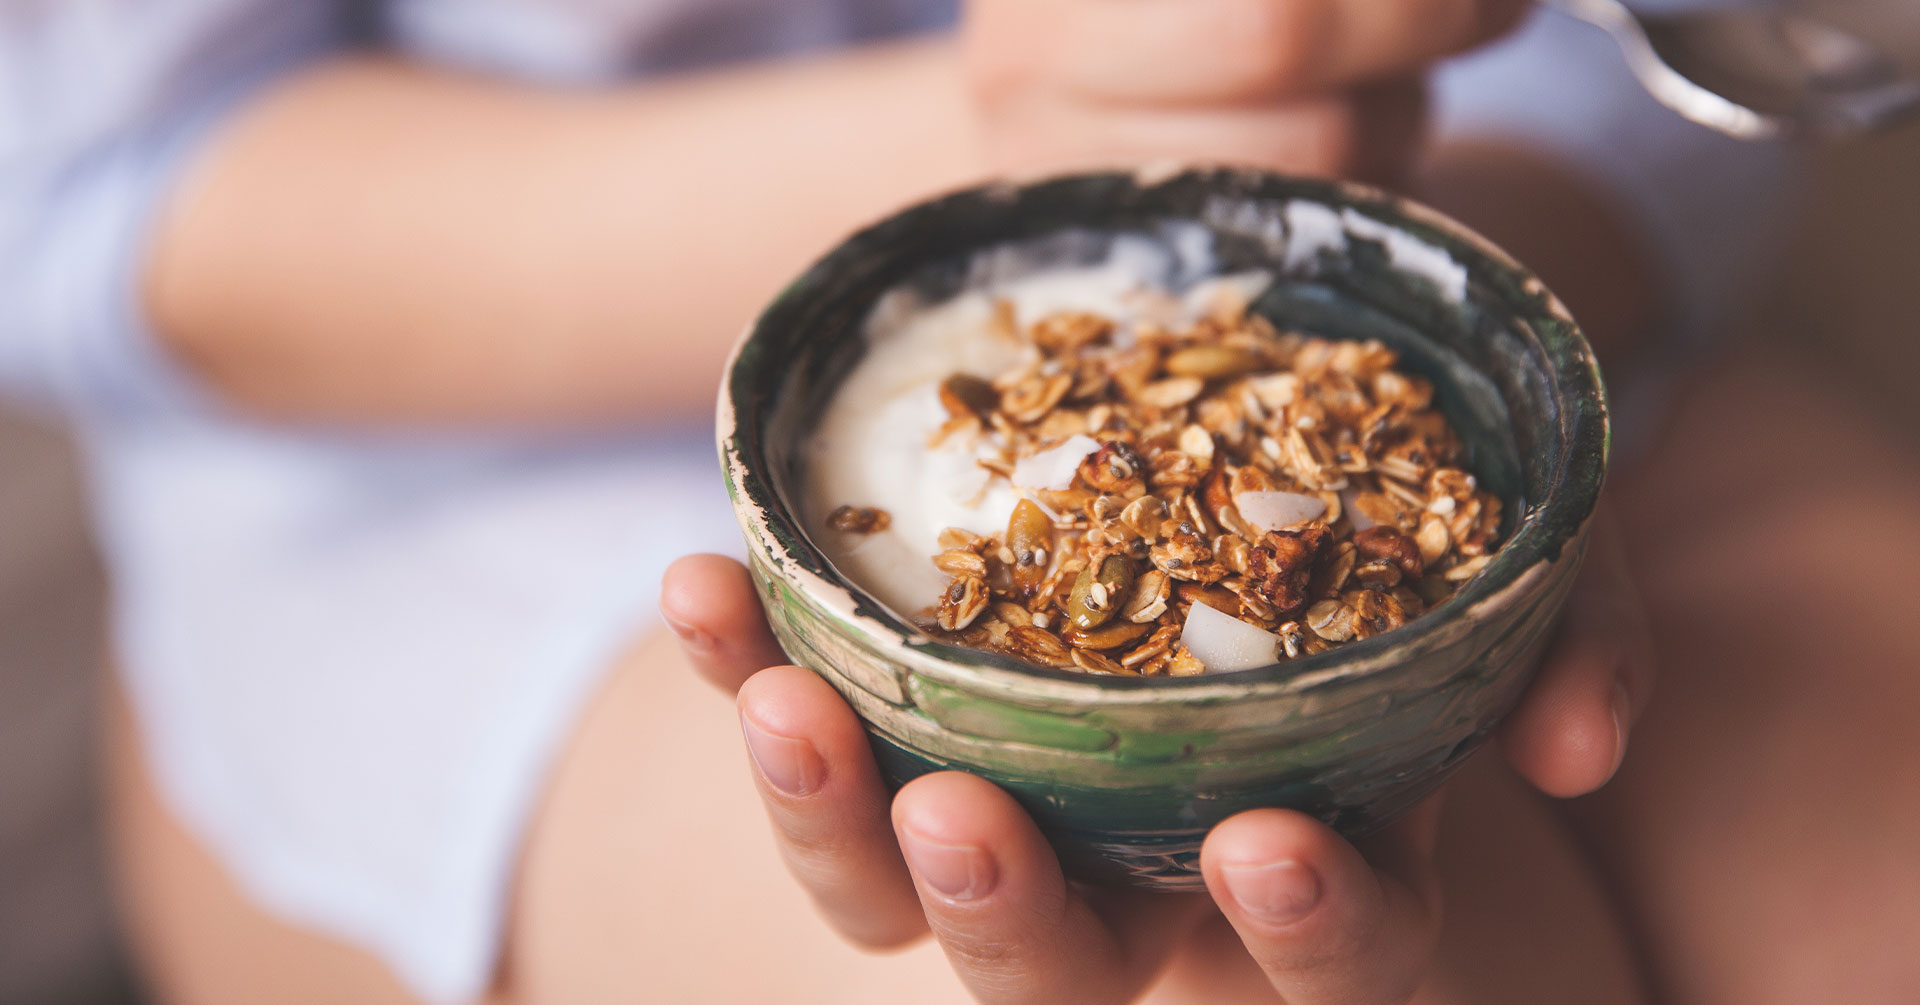 ¿Cuáles son los beneficios de comer granola? 5 razones para consumirla